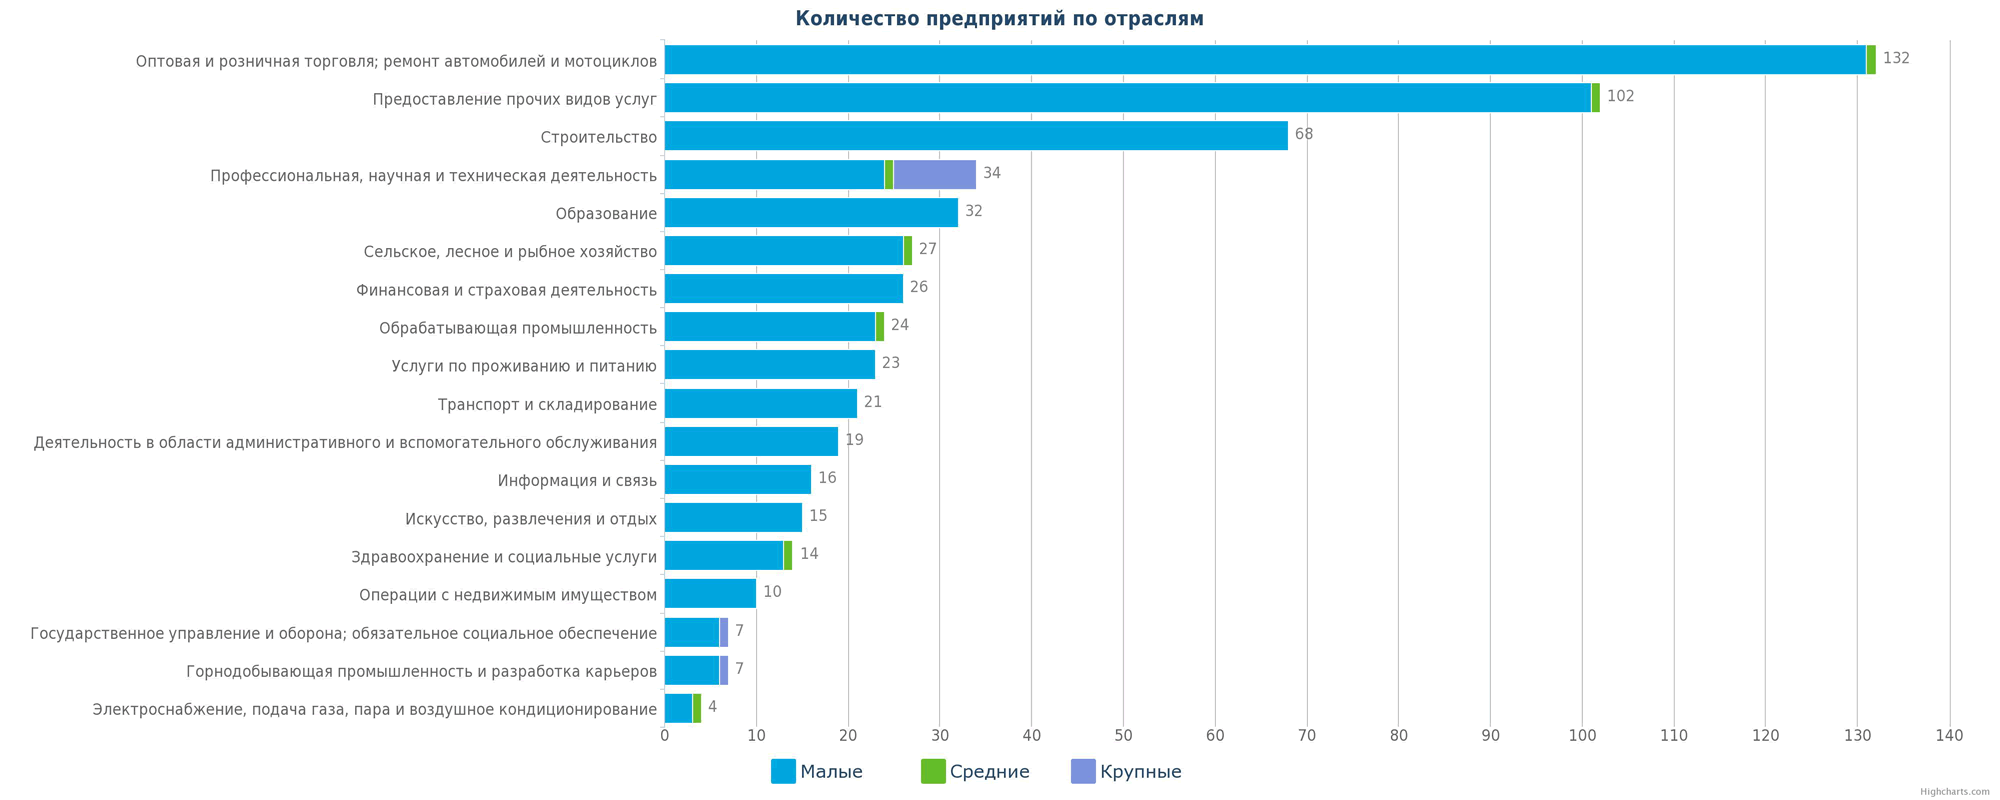 Количество новых компаний в справочнике Казахстана по отраслям